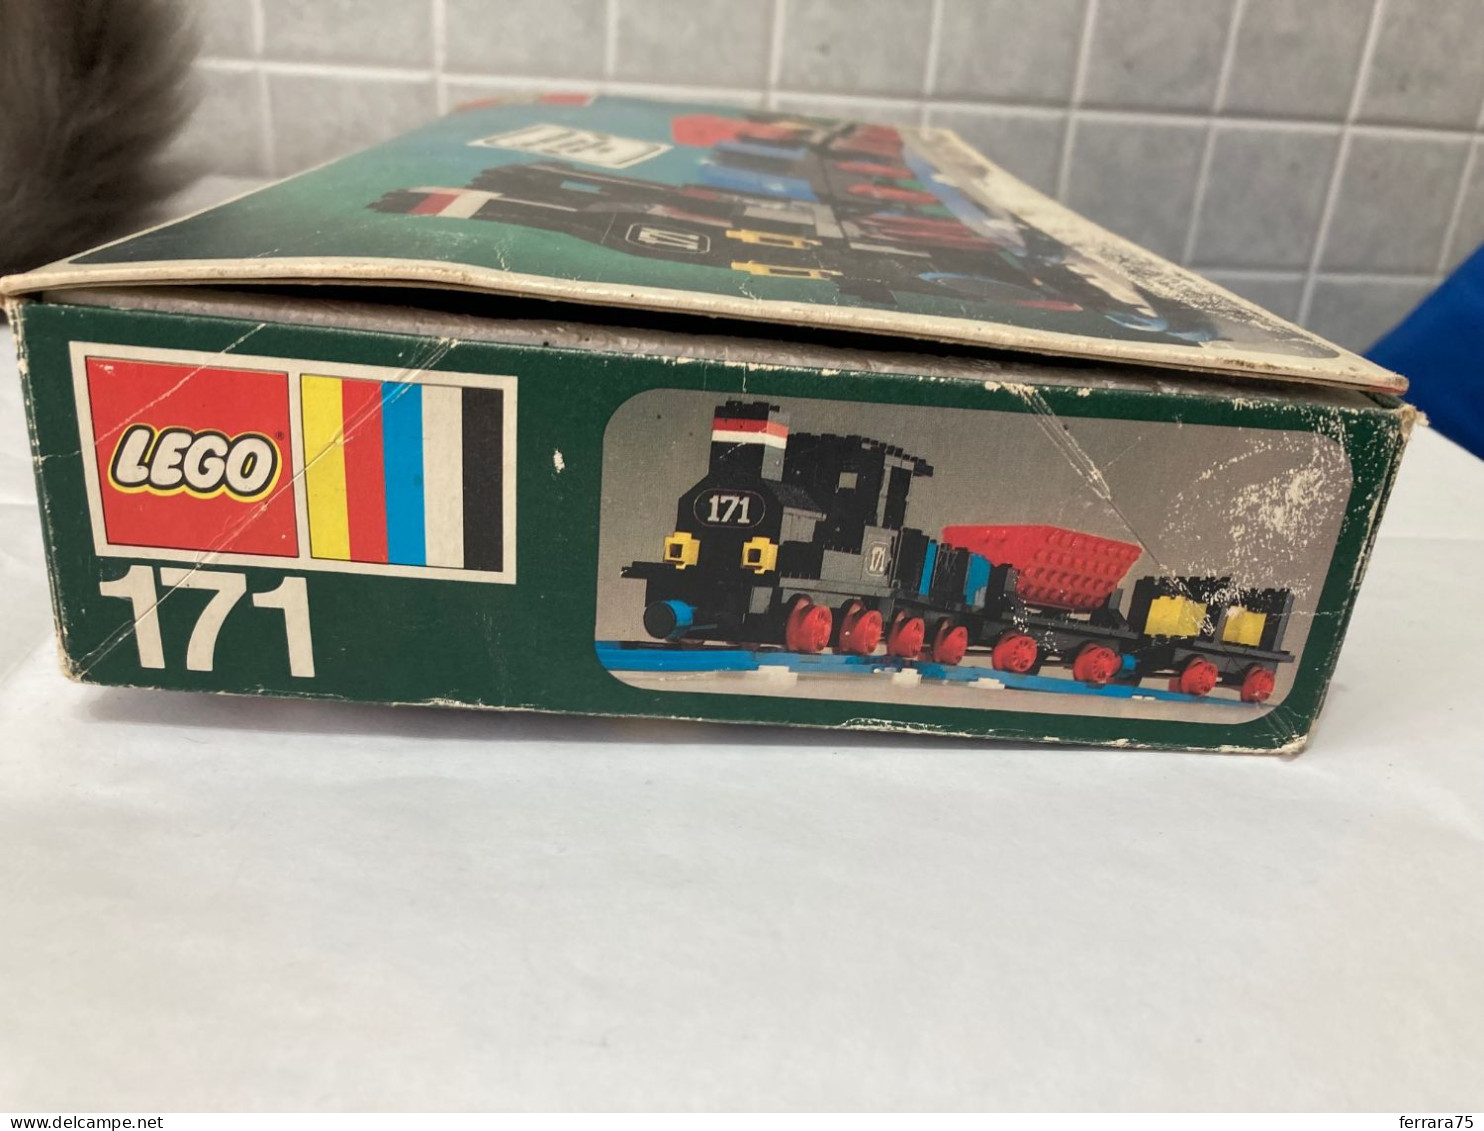 LEGO SET  171 TRENO TRAIN NON COMPLETO VINTAGE.